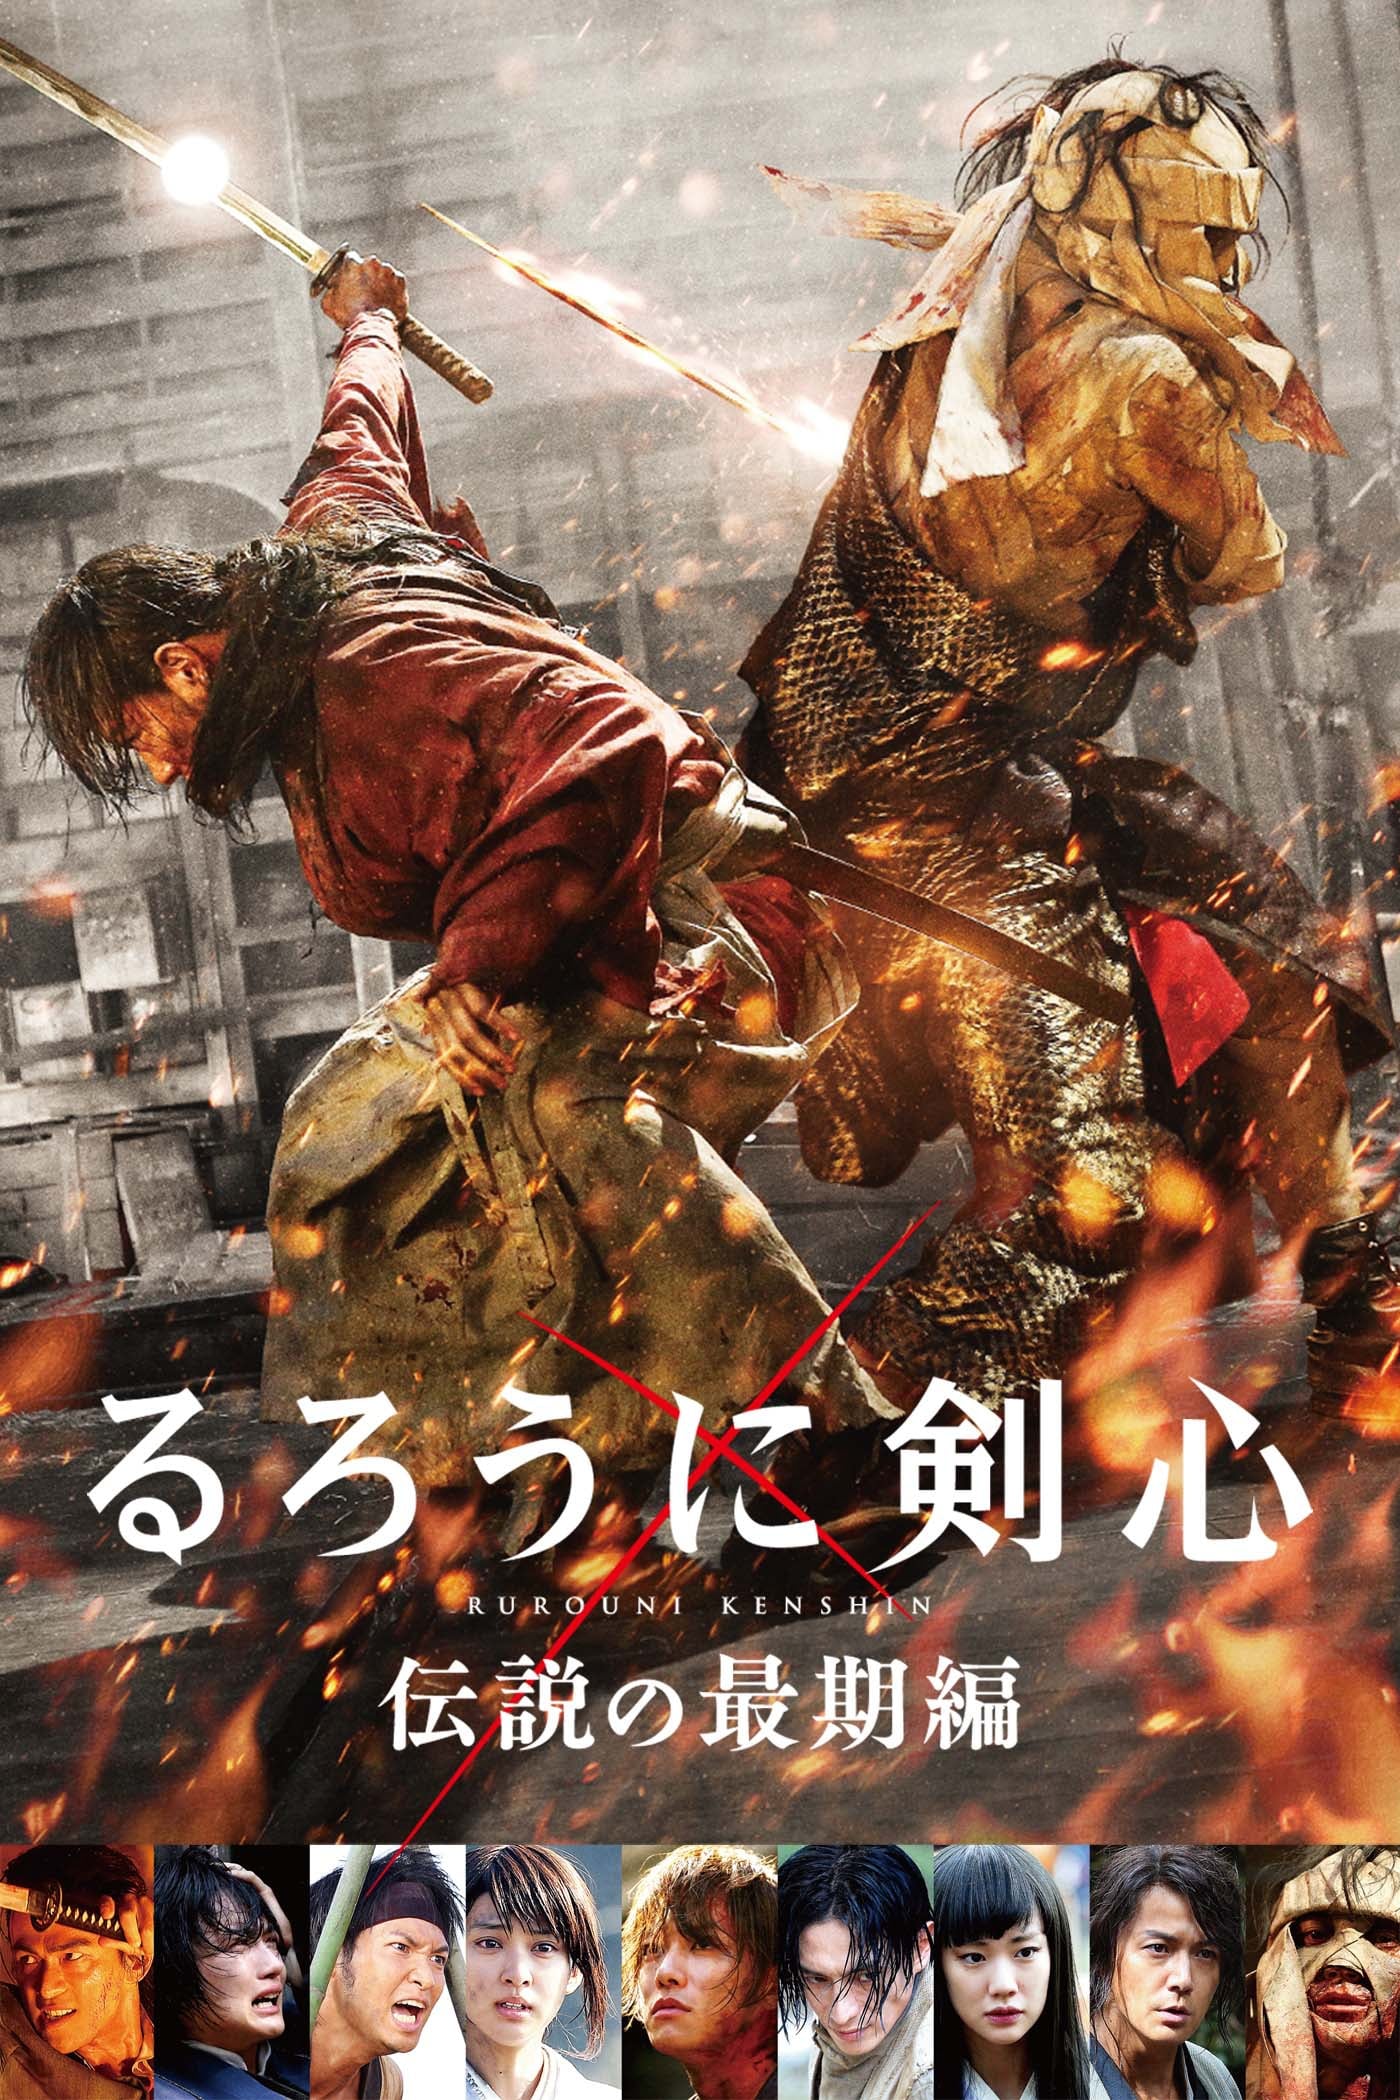 Lãng Khách Kenshin 3: Kết Thúc Một Huyền Thoại (Rurouni Kenshin: The Legend Ends) [2014]